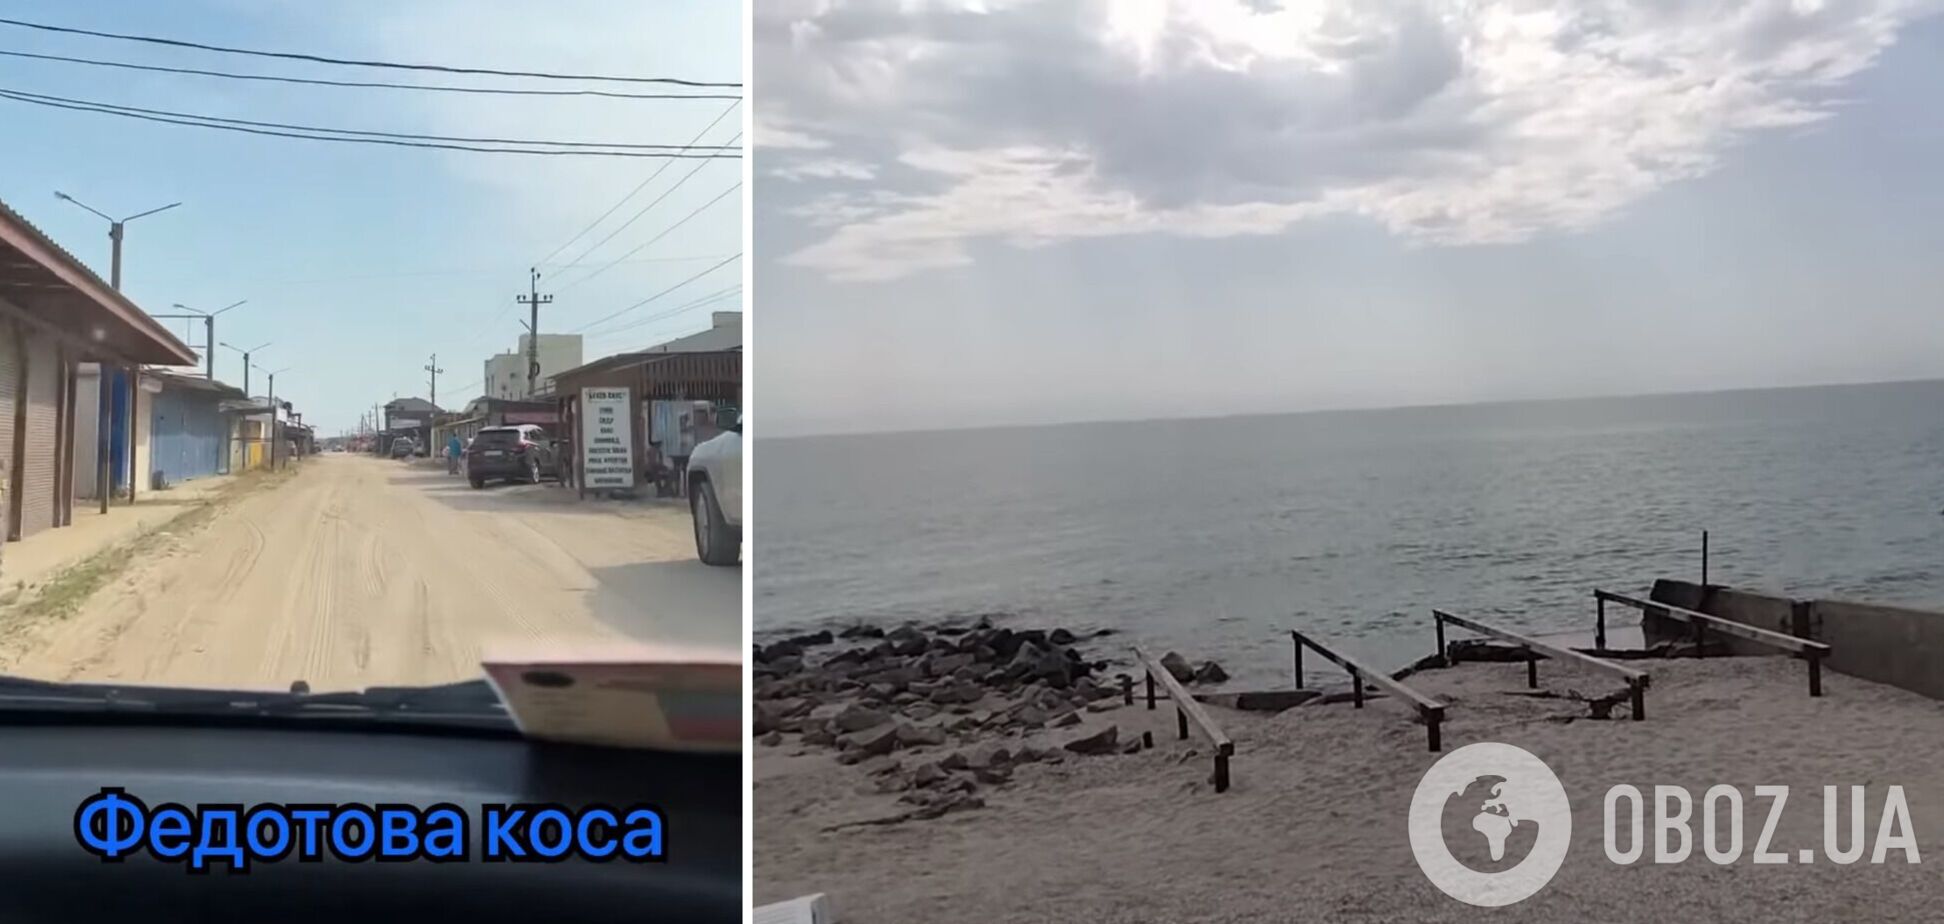 'Тримають народ за лоха': росіяни розповіли про туристичний бум у Кирилівці, але кадри з пляжів видали всю правду. Відео